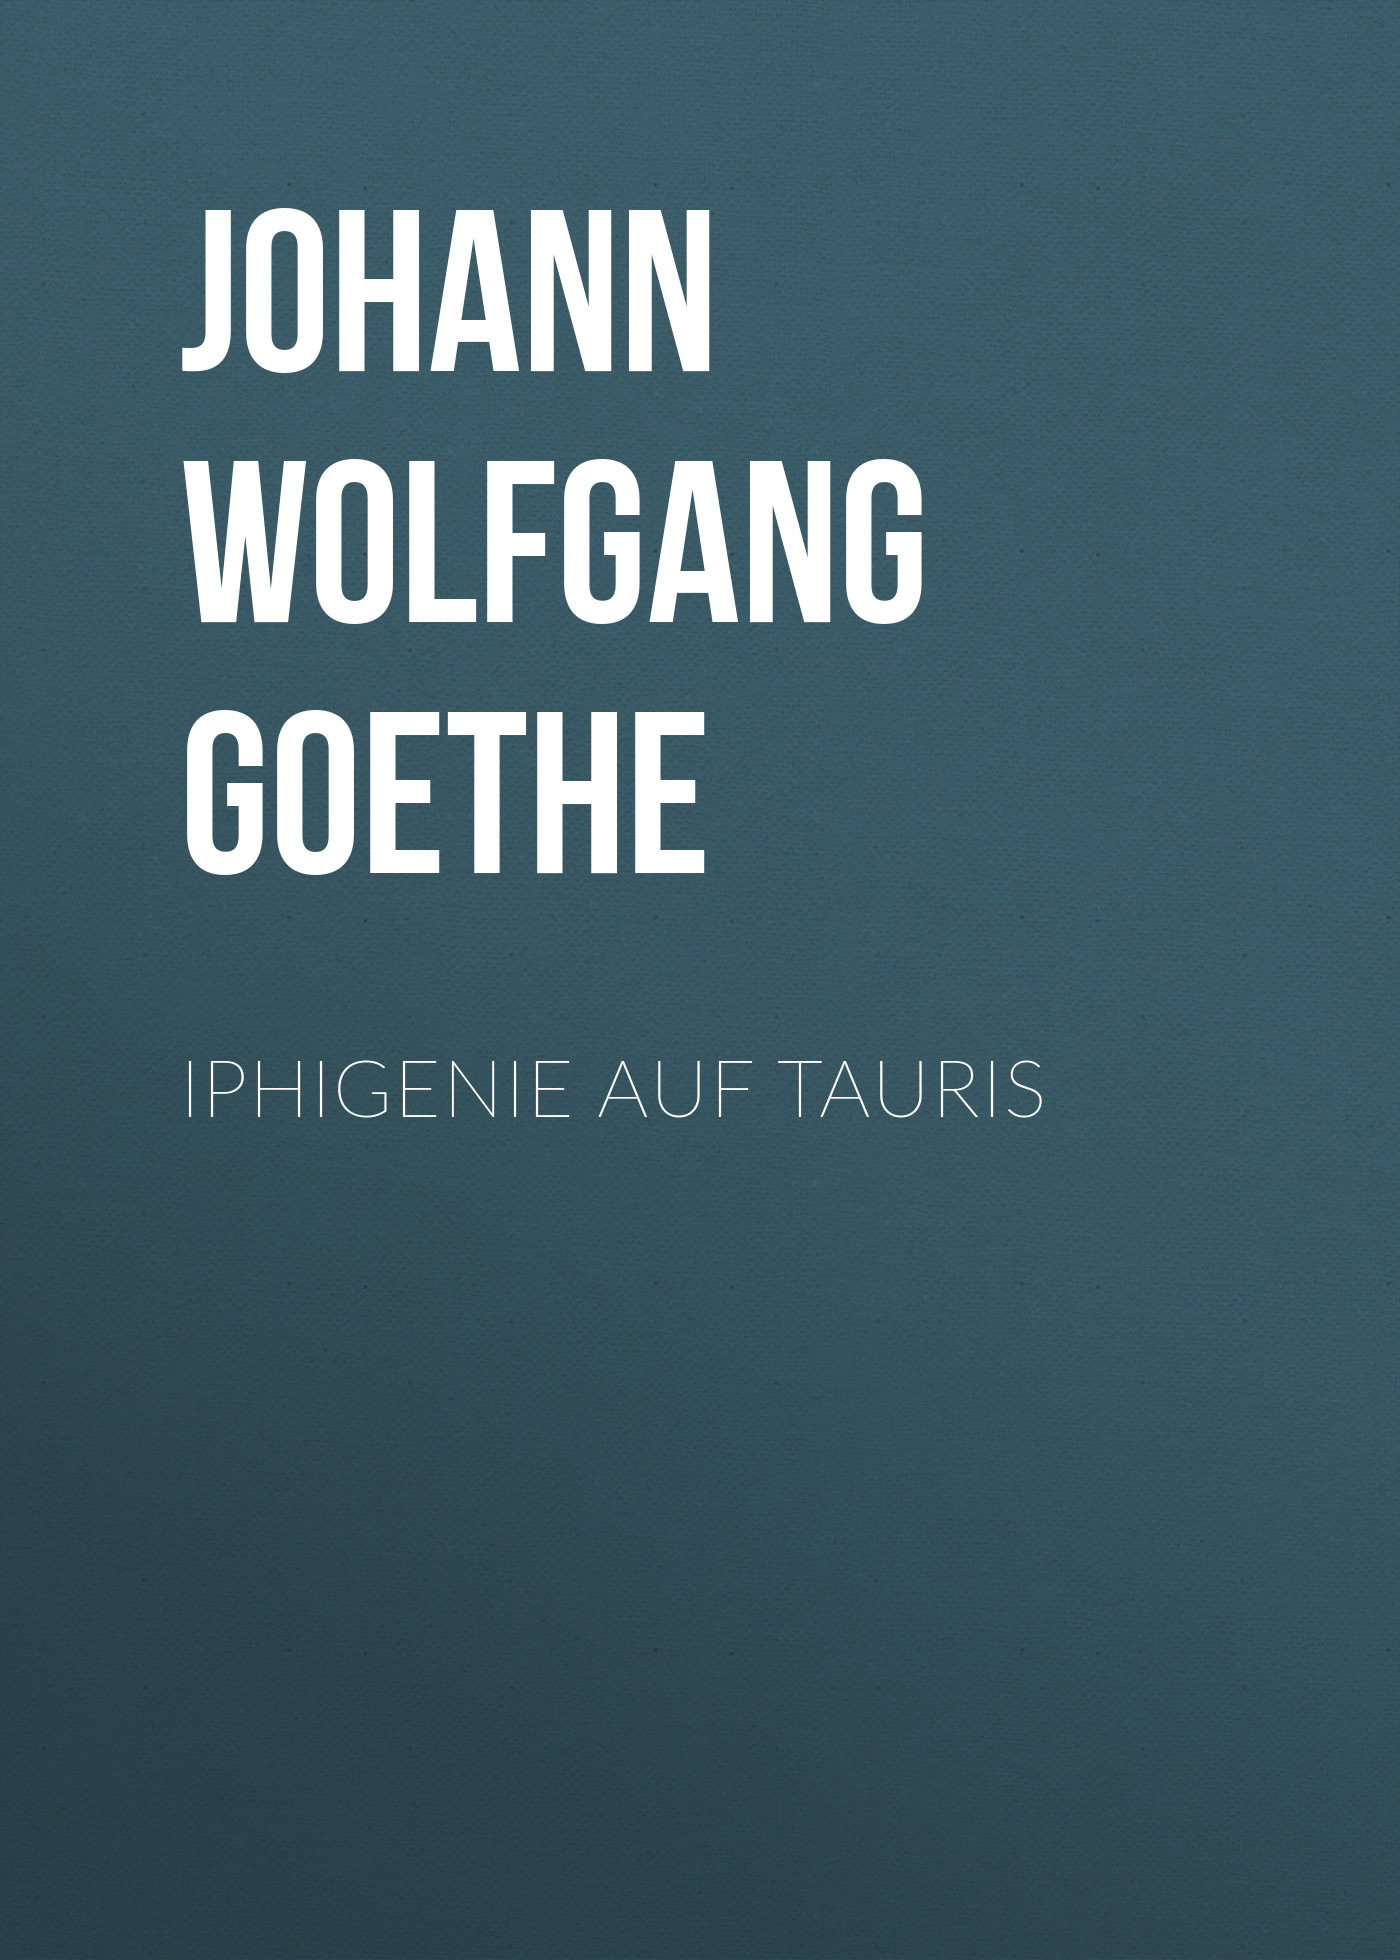 Книга Iphigenie auf Tauris из серии , созданная Johann von Goethe, может относится к жанру Зарубежная старинная литература, Зарубежная классика. Стоимость электронной книги Iphigenie auf Tauris с идентификатором 25202495 составляет 0 руб.